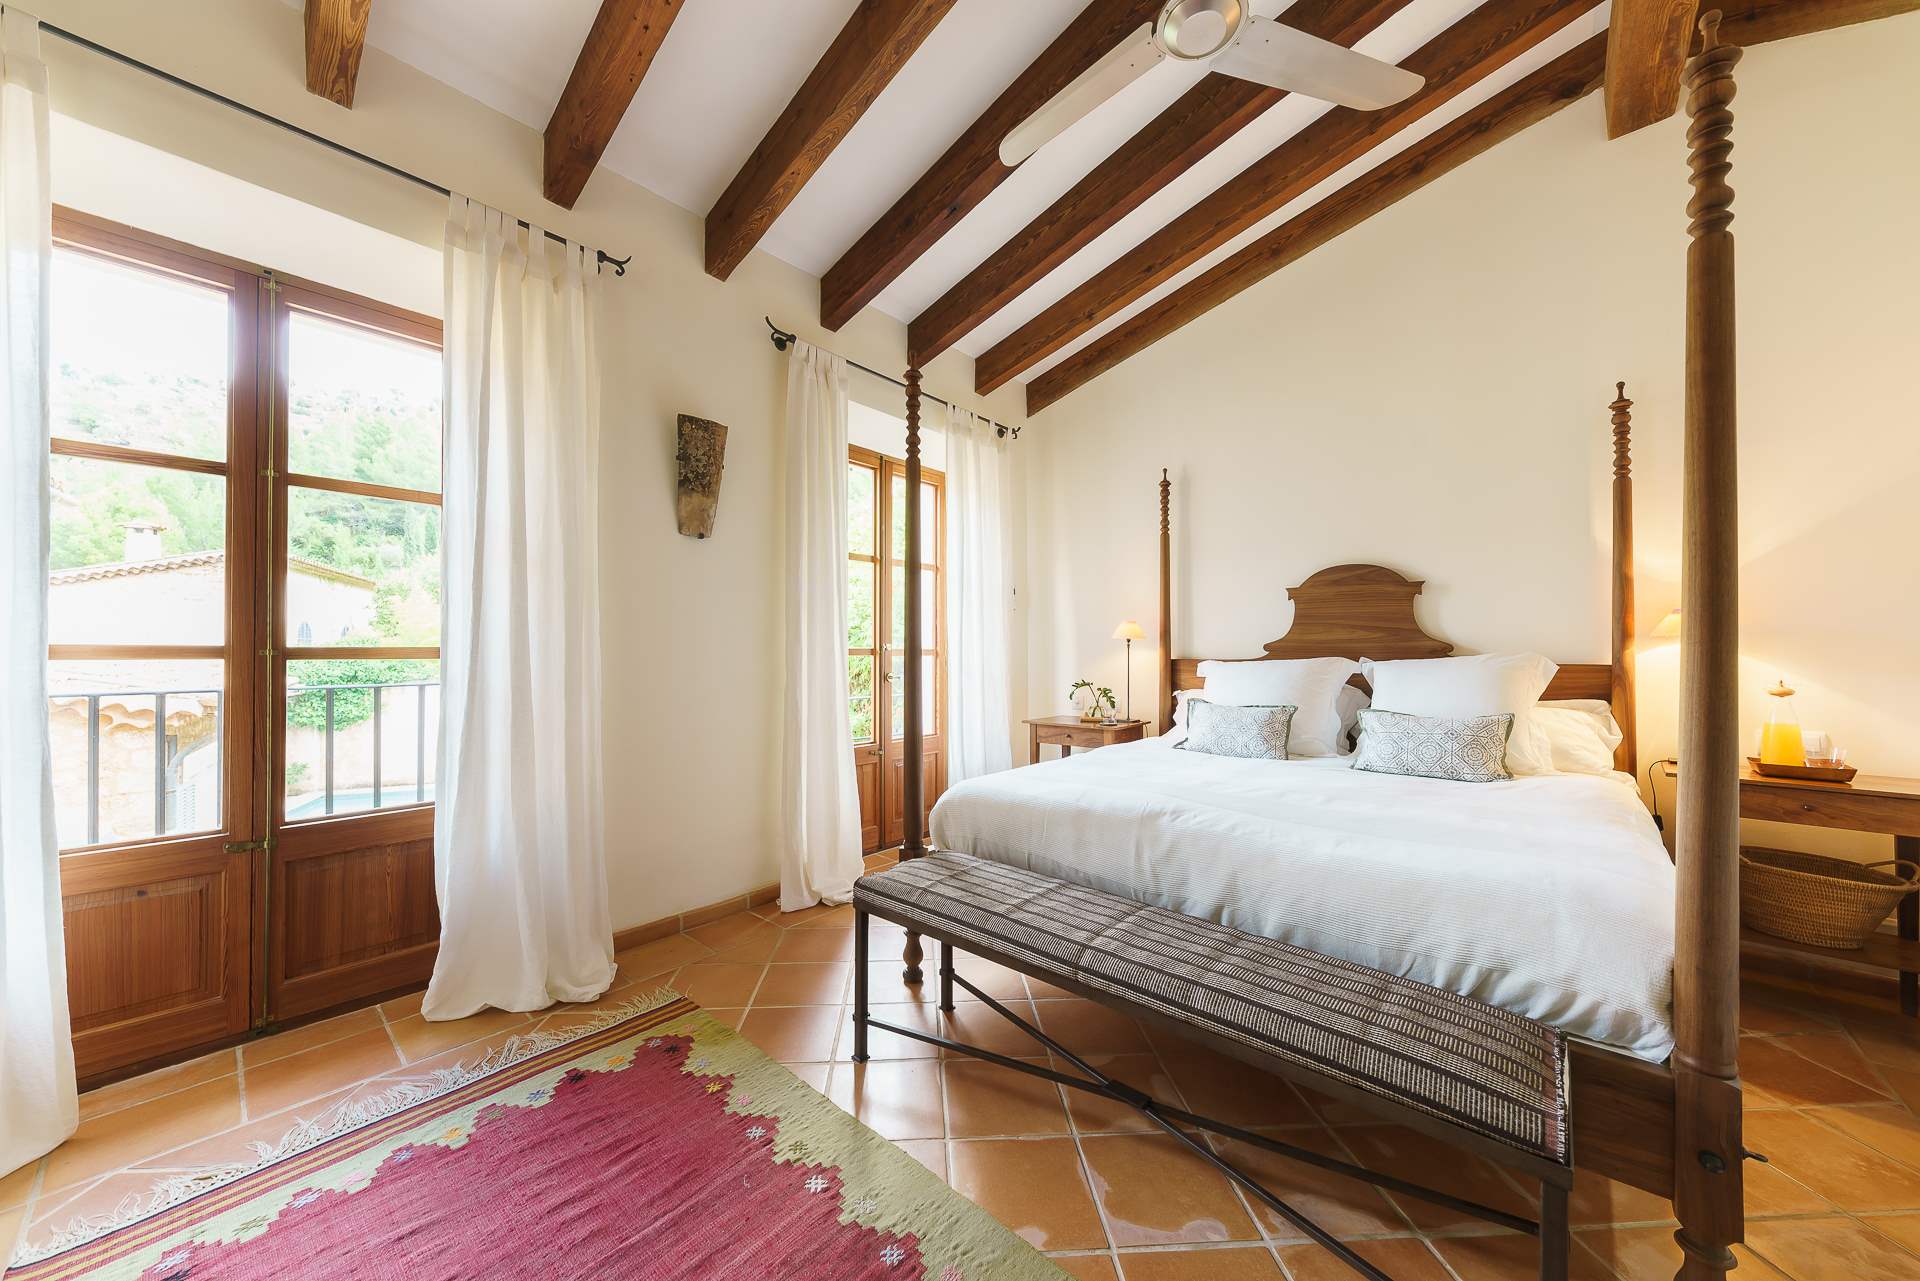 Sa Tanca, 4 Bedroom Rental, 4 bedroom villa in Soller & Deia, Majorca Photo #26